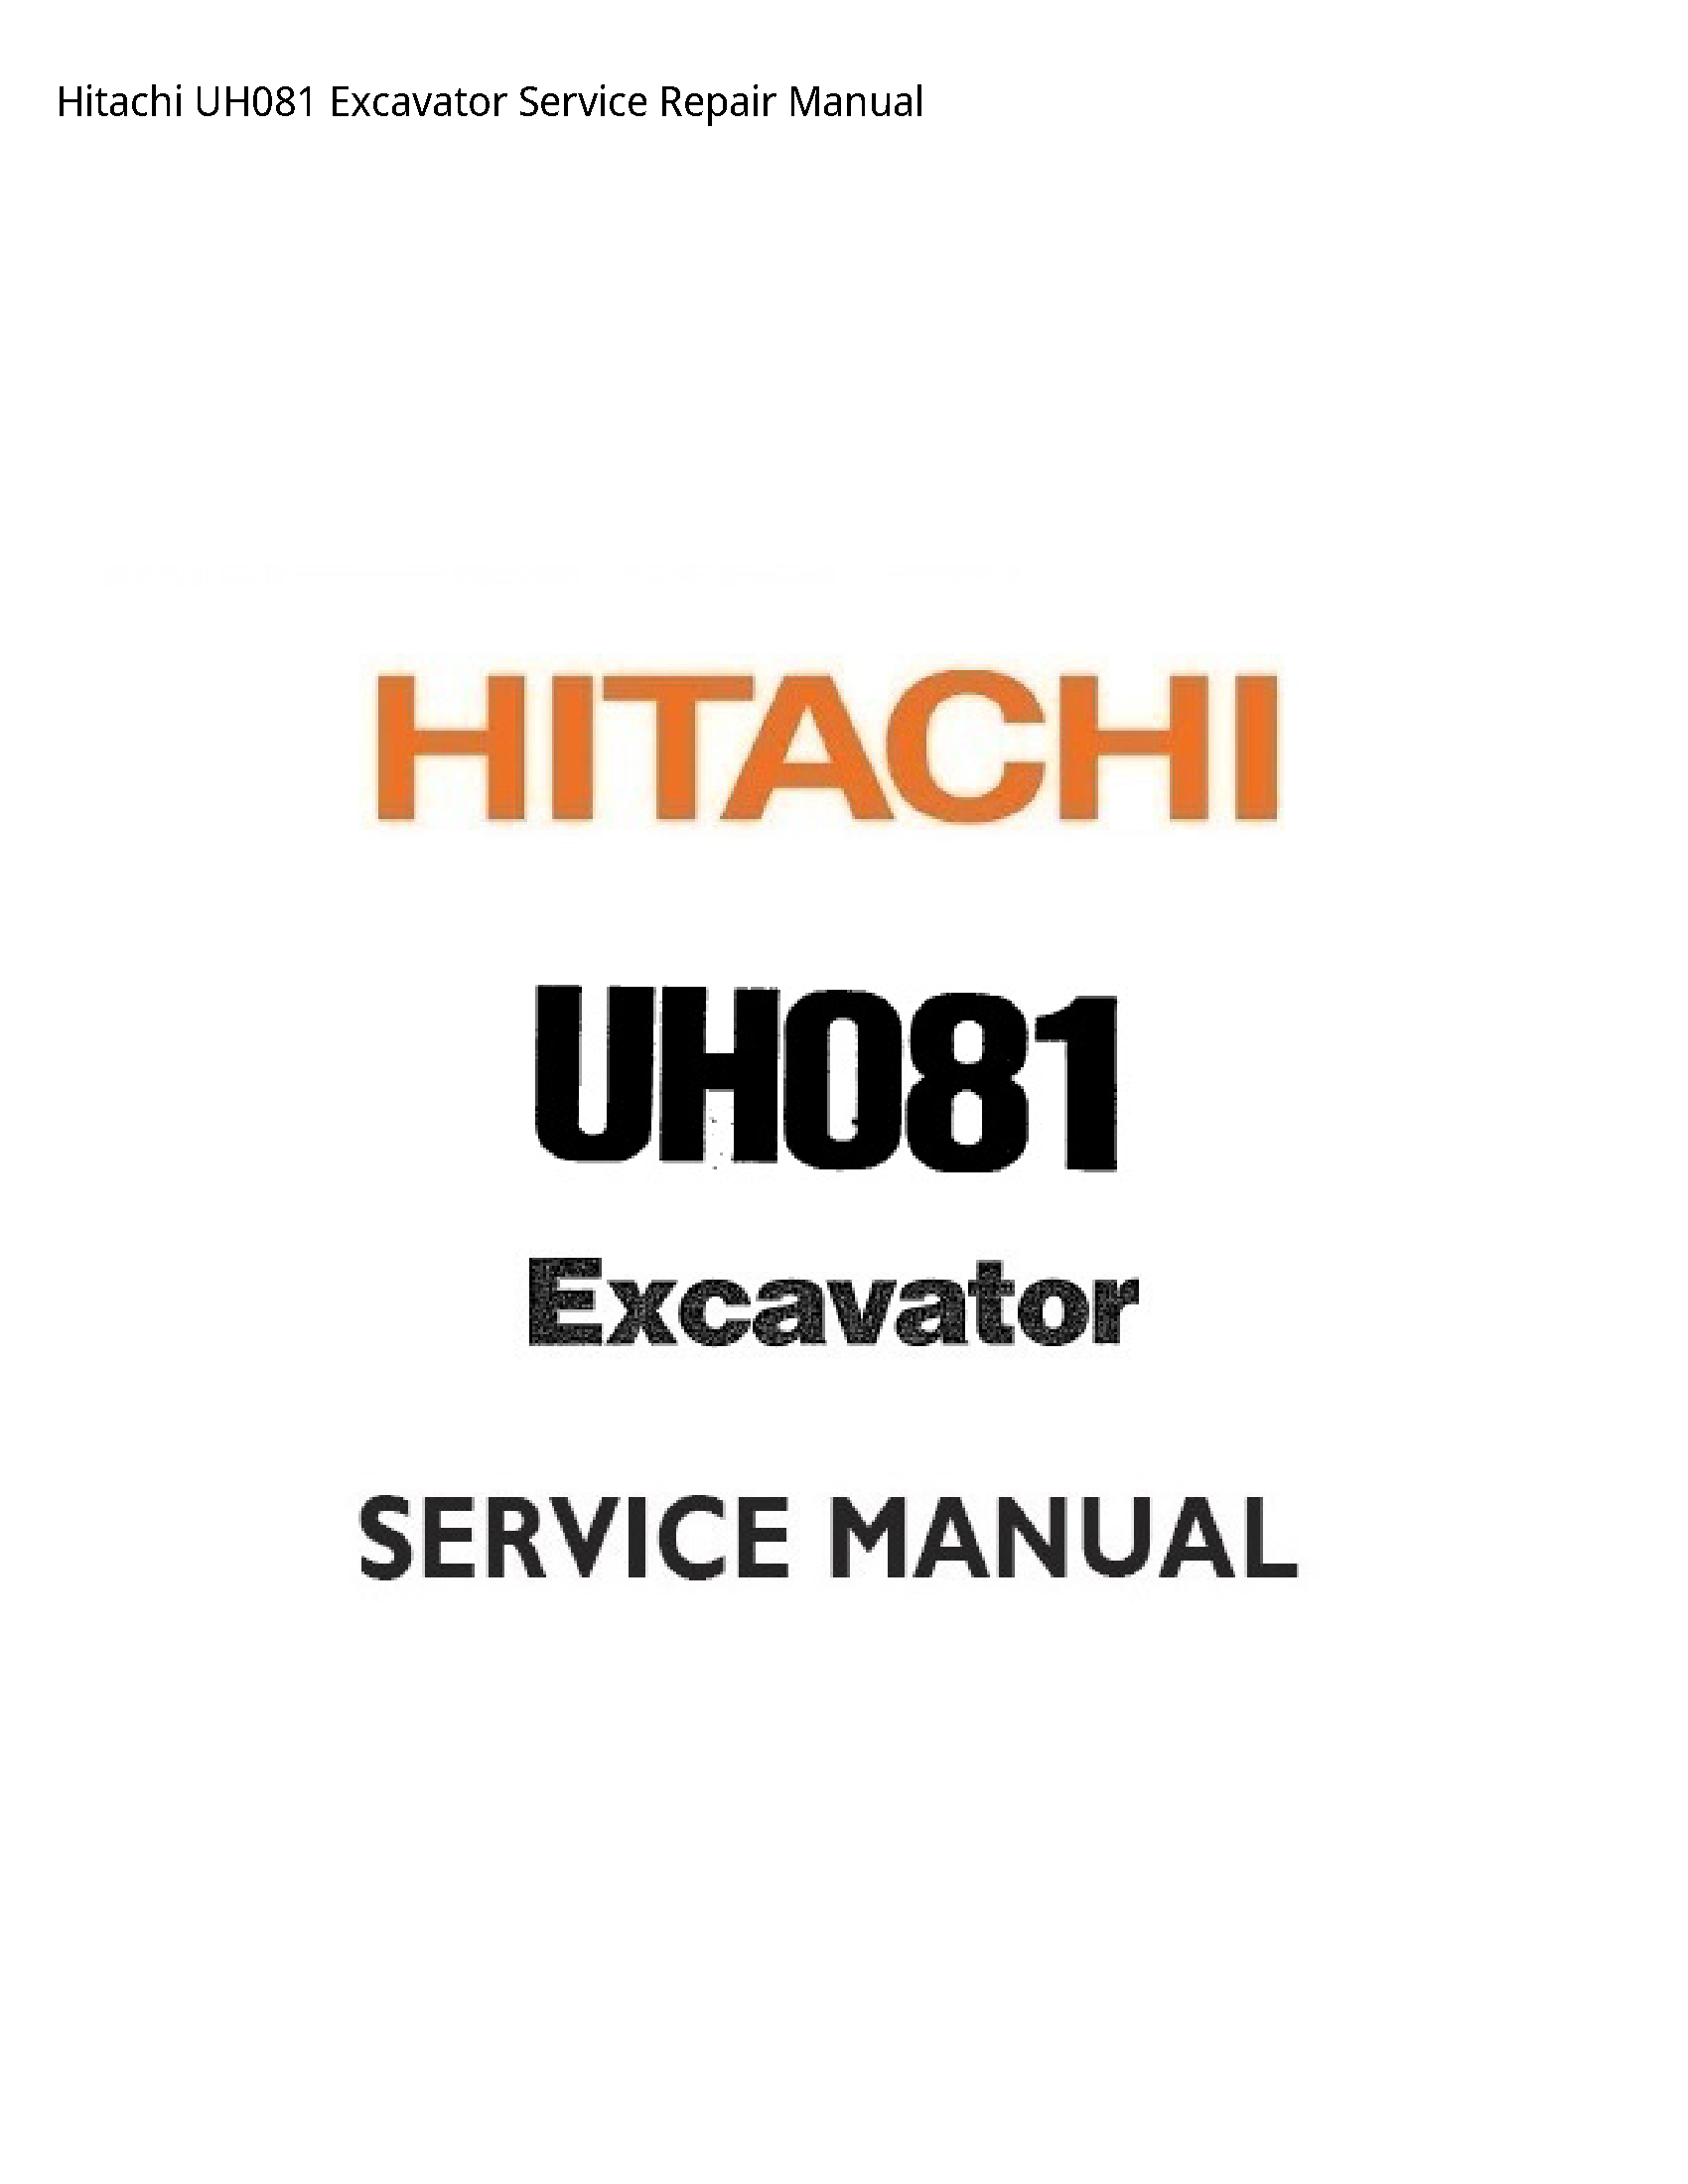 Hitachi UH081 Excavator manual